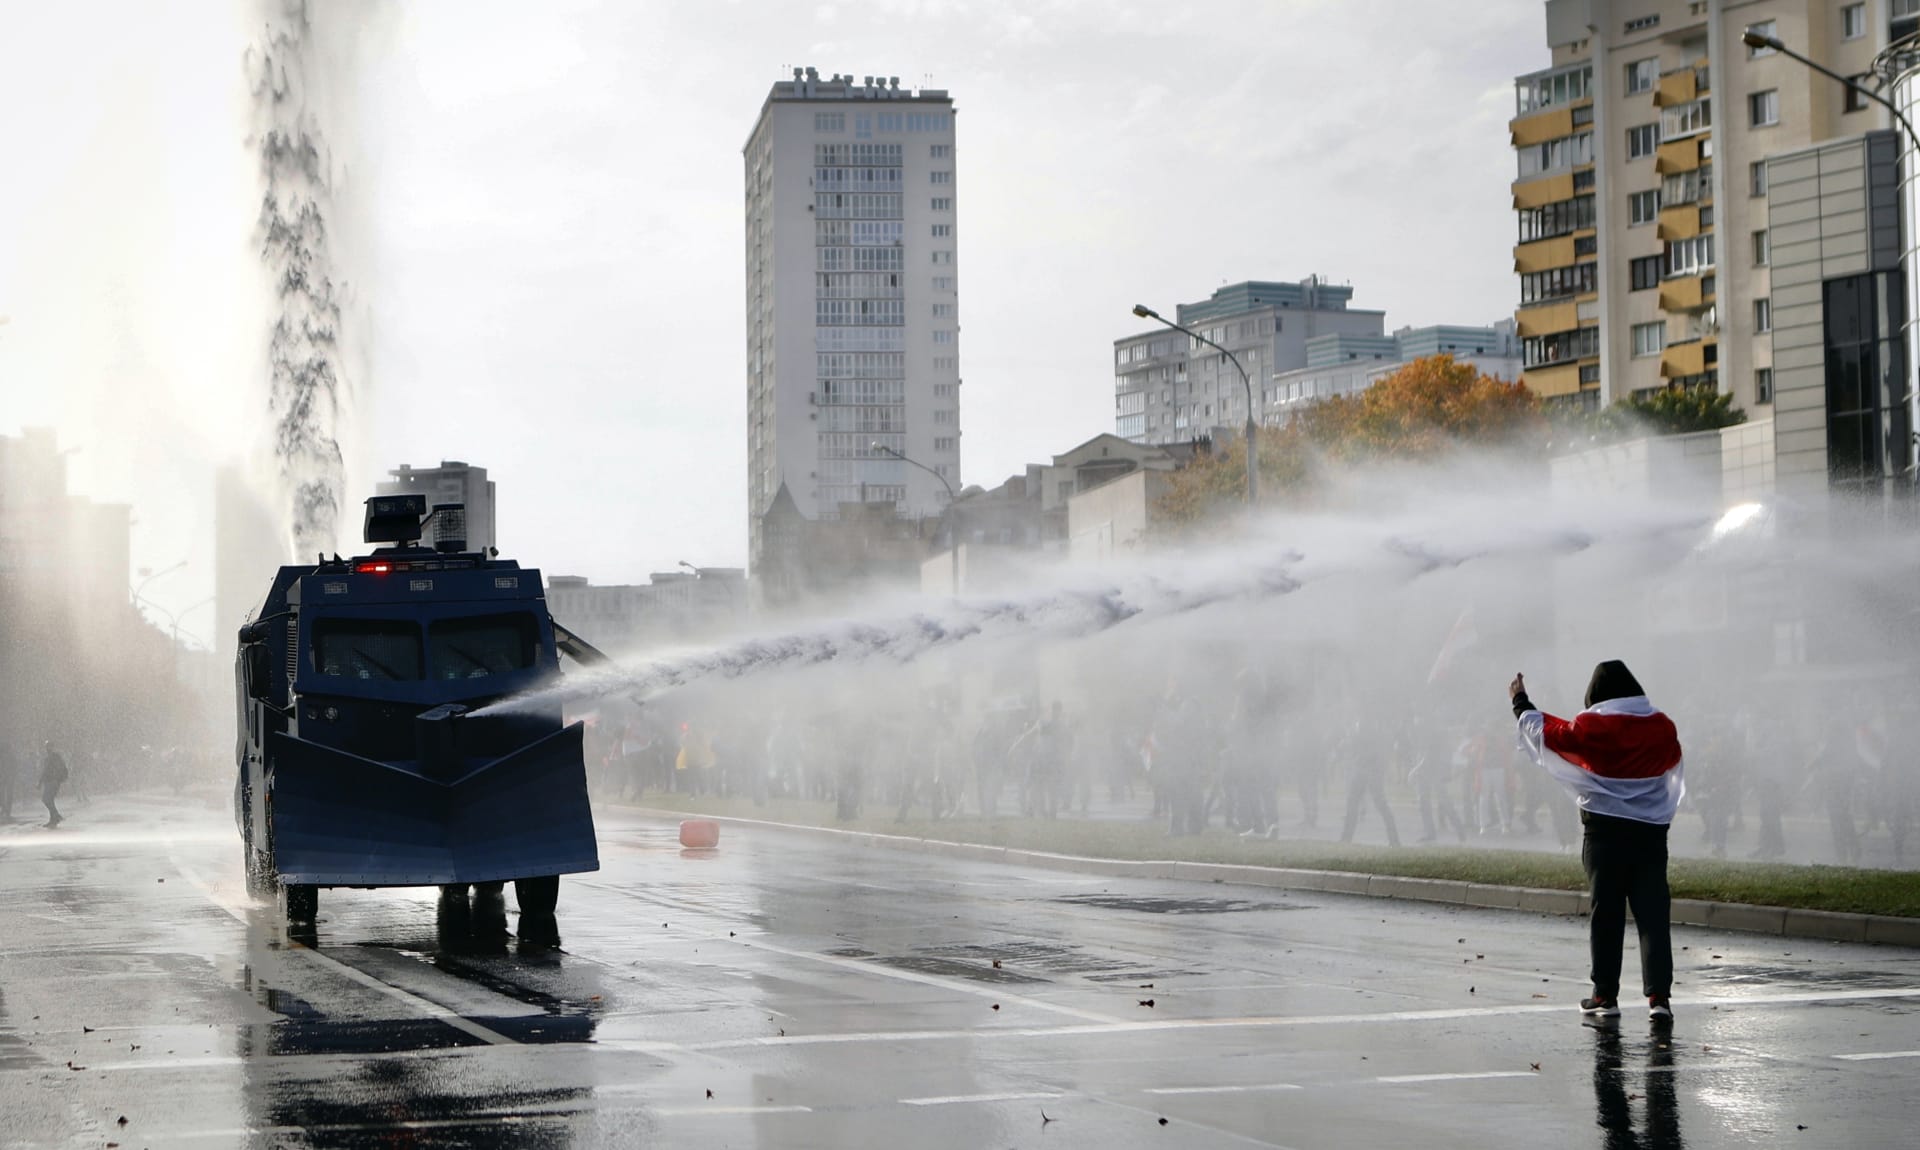 Policie v Minsku použila proti demonstrantům vodní děla.